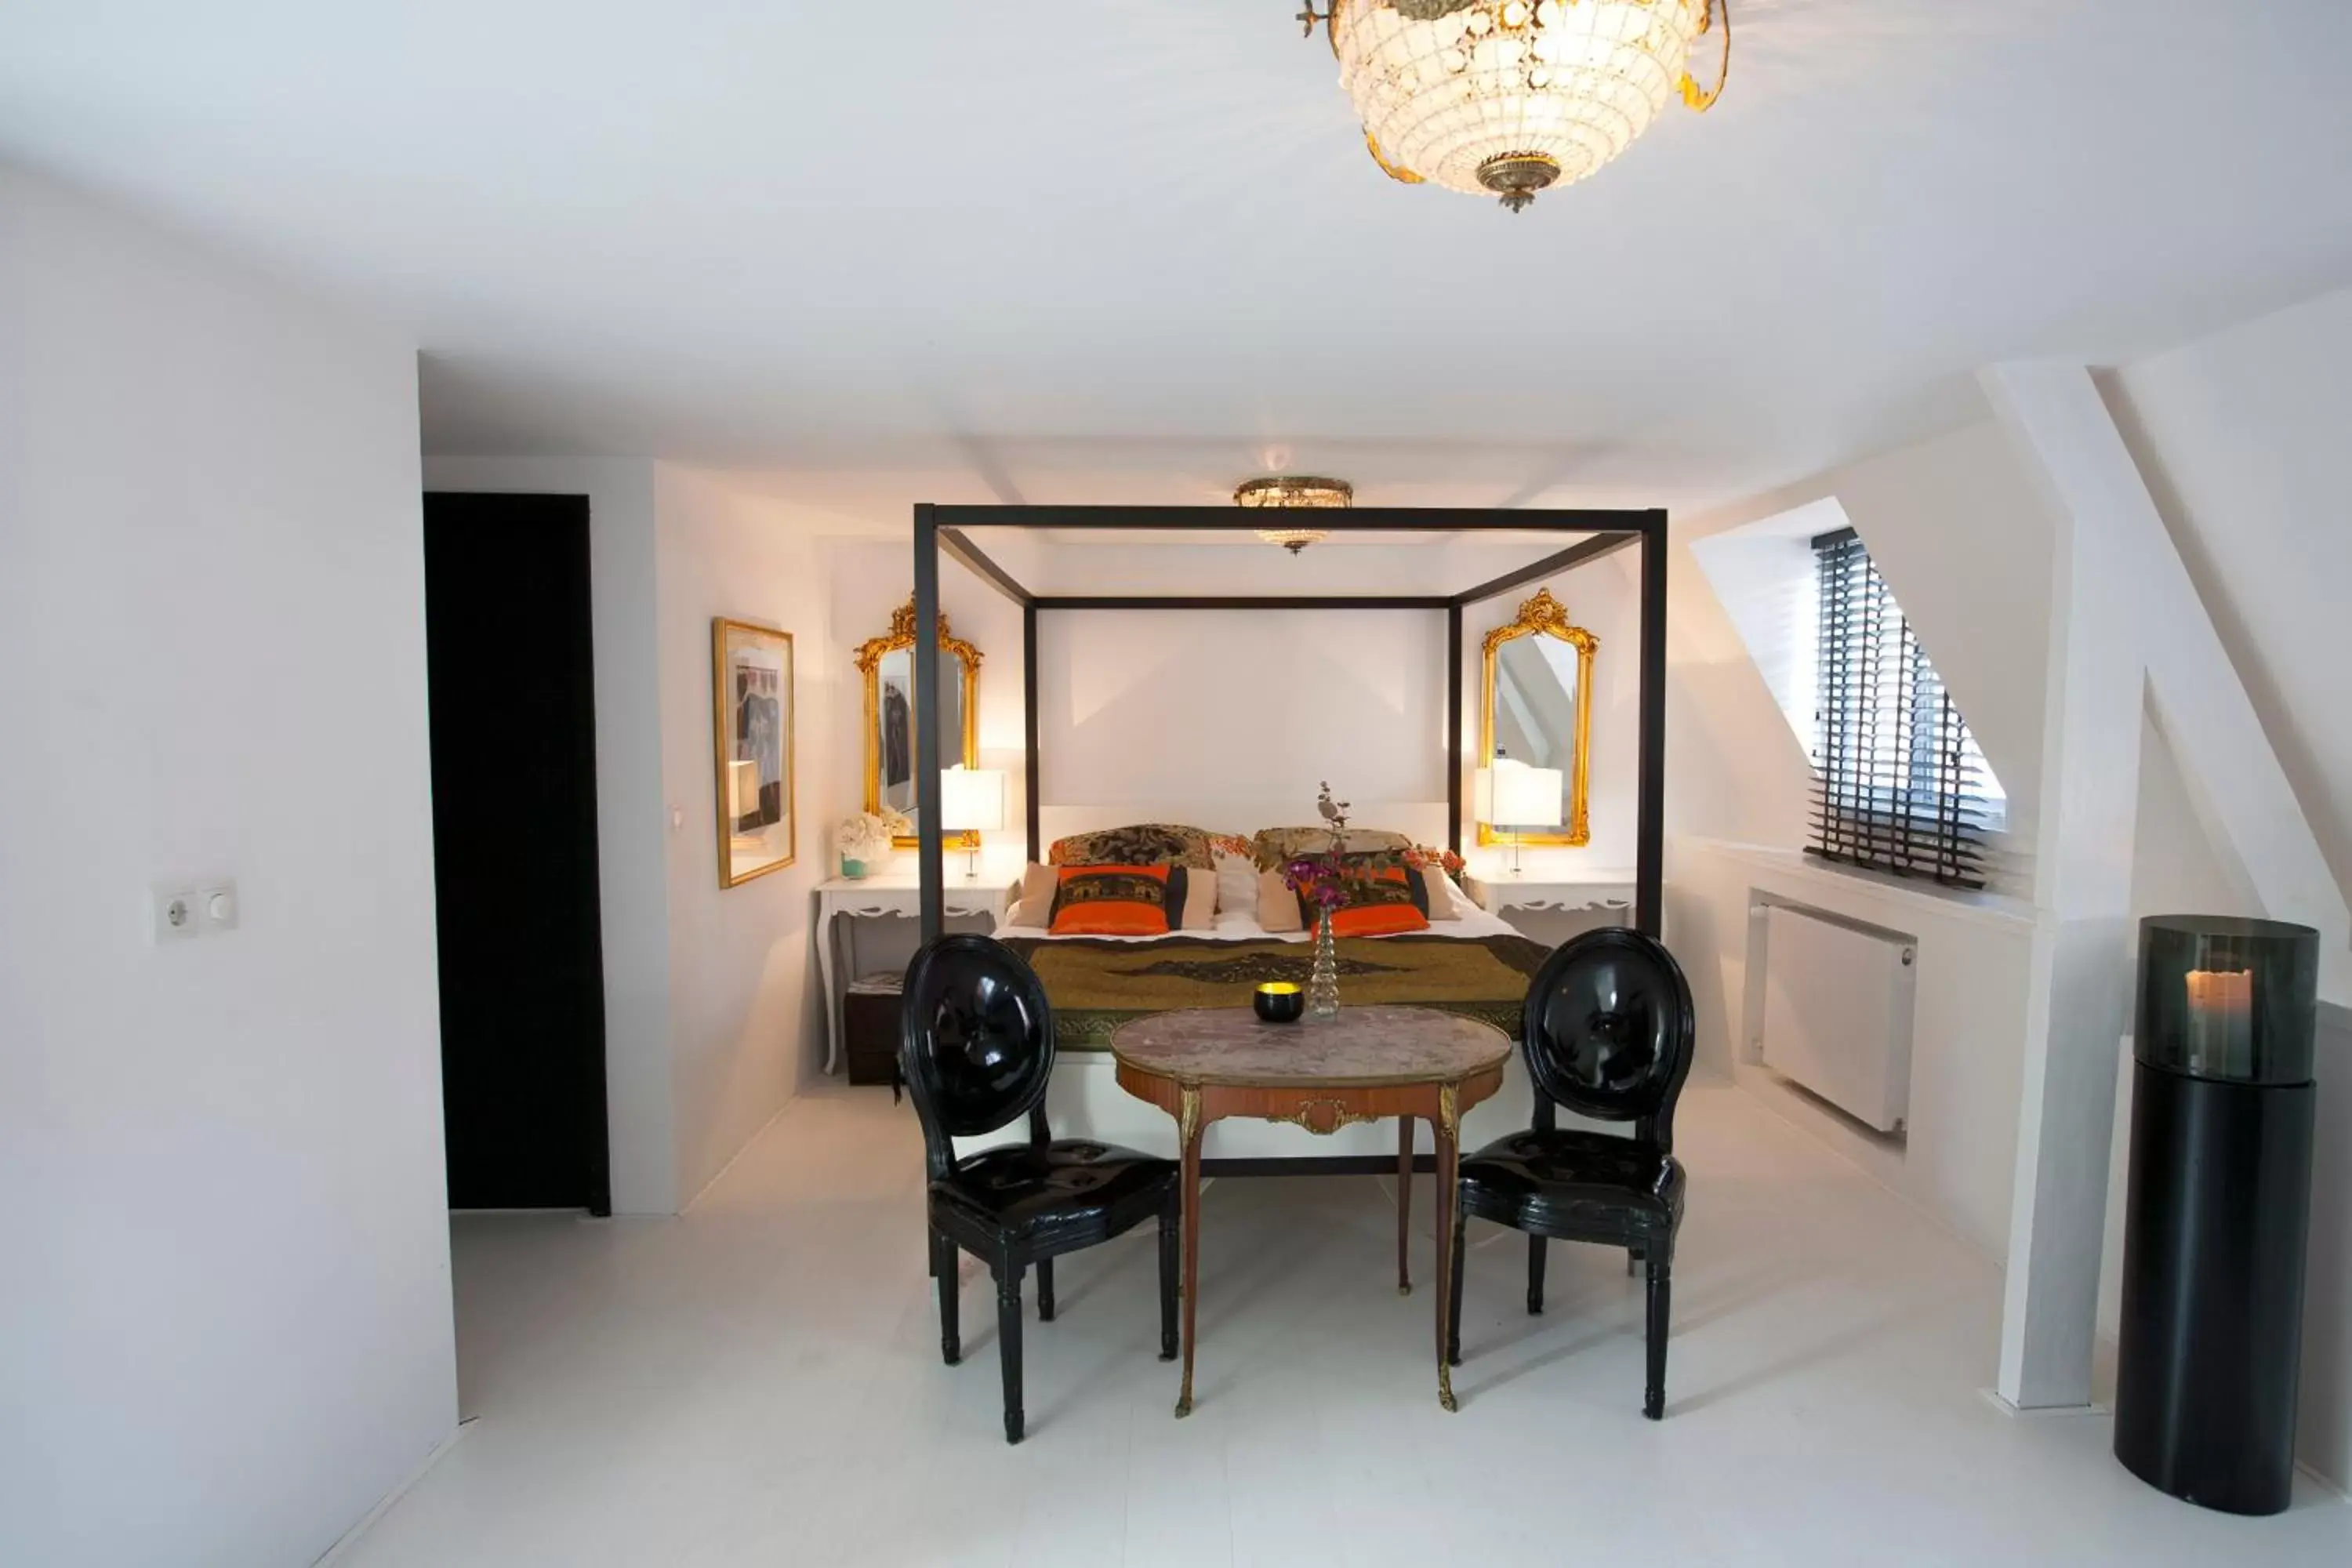 Bedroom, Dining Area in Design B&B Naarden Vesting